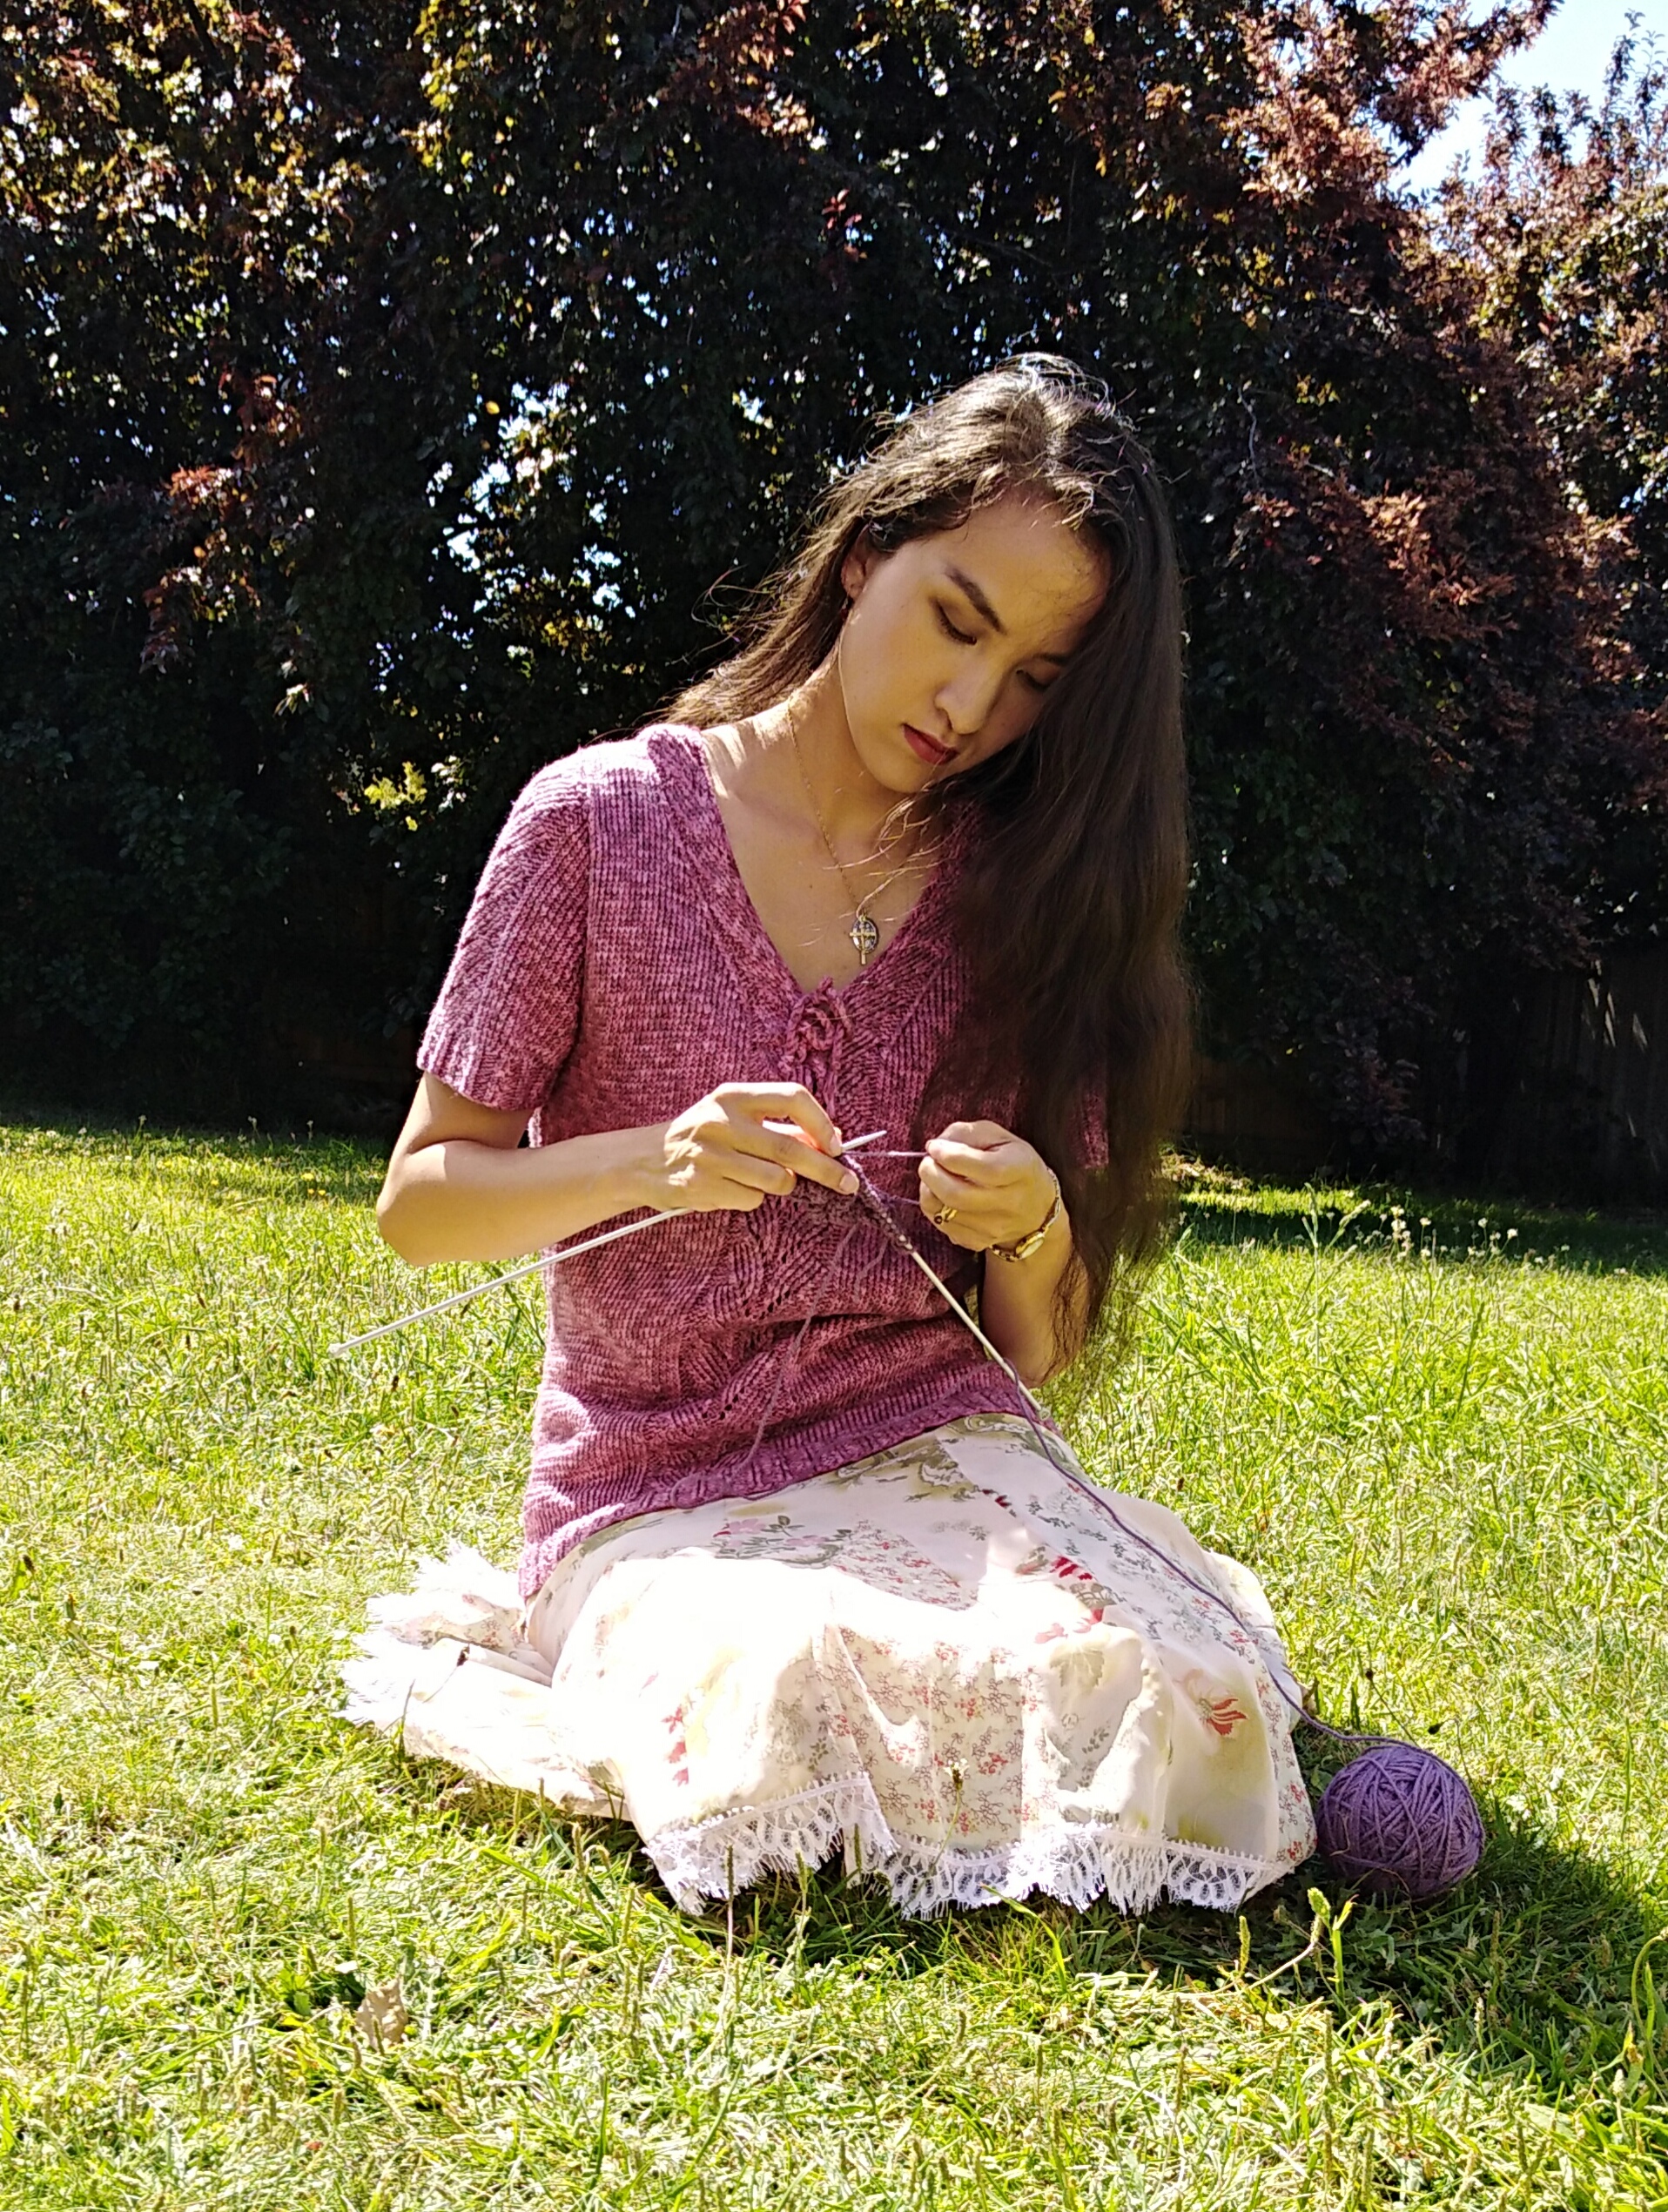 Kat, the blogger, knitting.